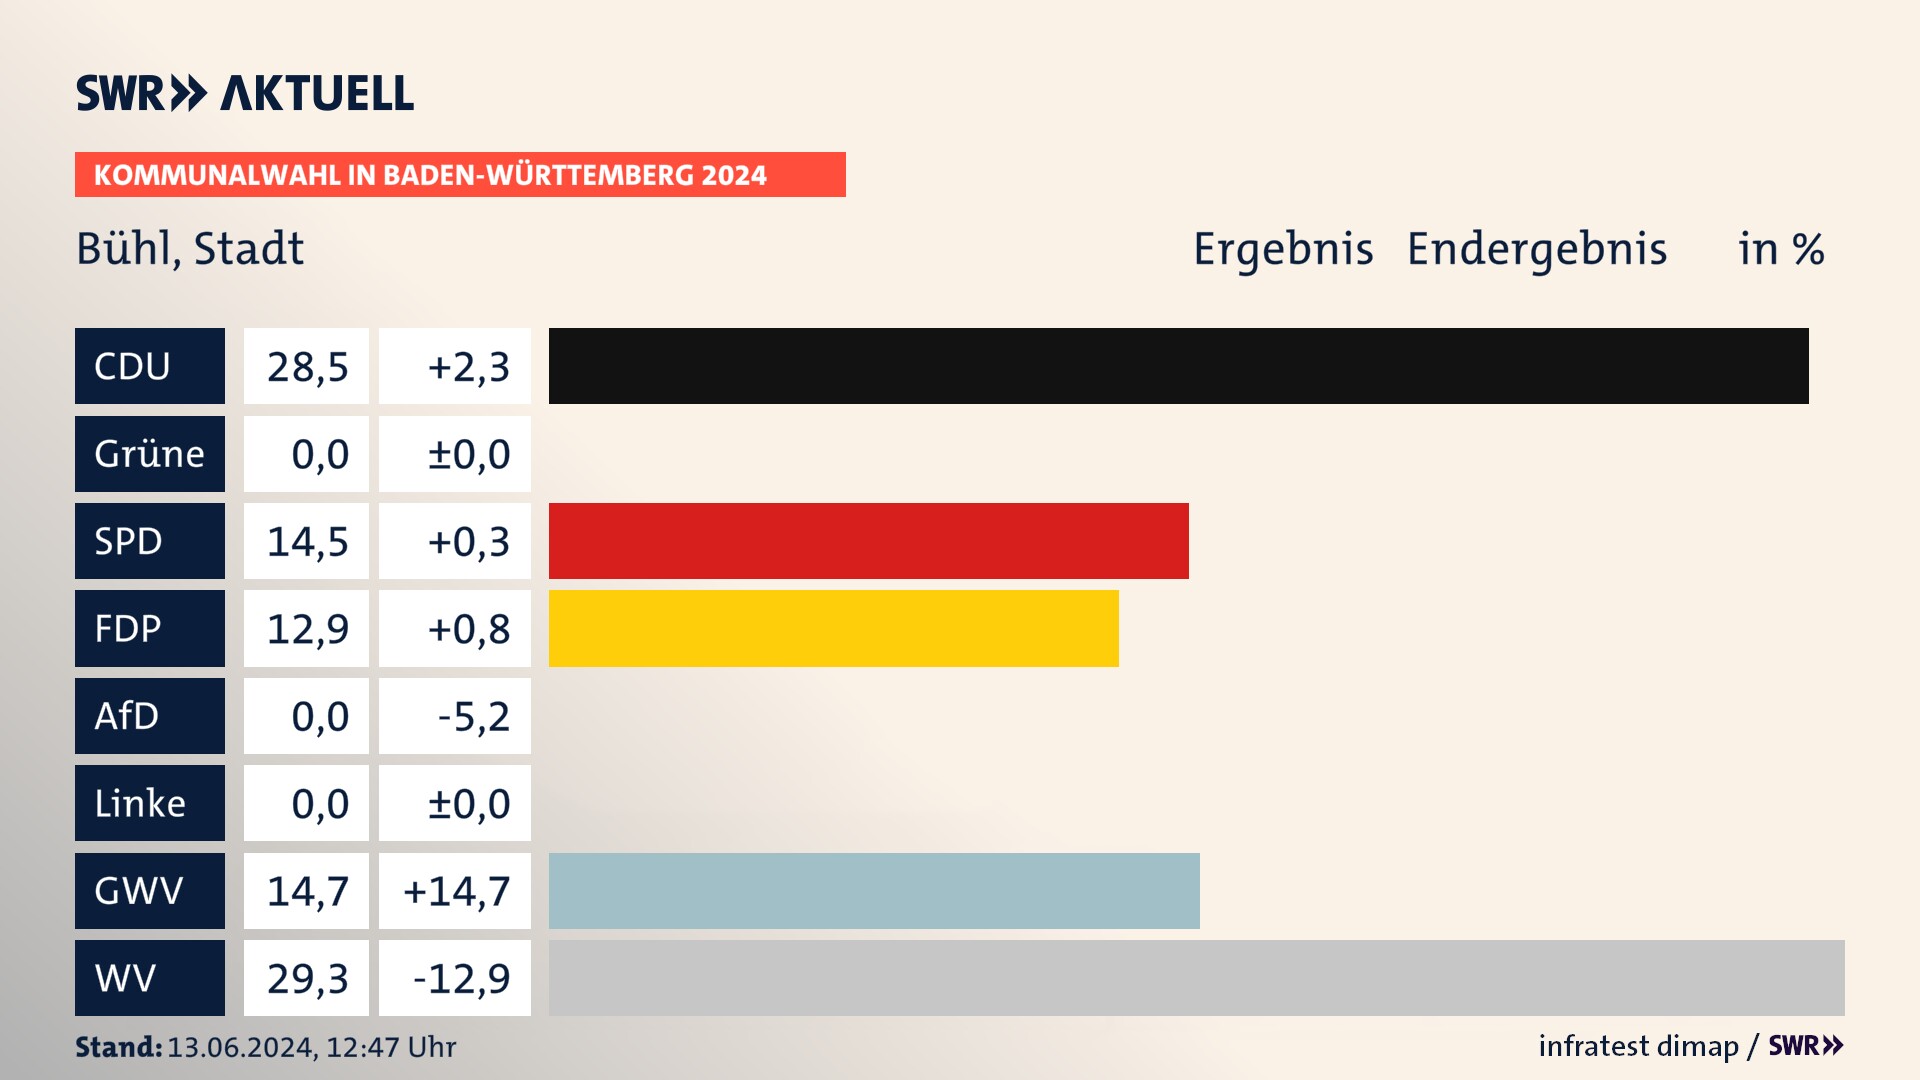 Kommunalwahl 2024 Endergebnis Zweitstimme für Bühl. In Bühl, Stadt erzielt die CDU 28,5 Prozent der gültigen  Stimmen. Die SPD landet bei 14,5 Prozent. Die FDP erreicht 12,9 Prozent. Die Gemeinsame Wahlvorschläge kommen auf 14,7 Prozent. Die Wählervereinigungen landen bei 29,3 Prozent.